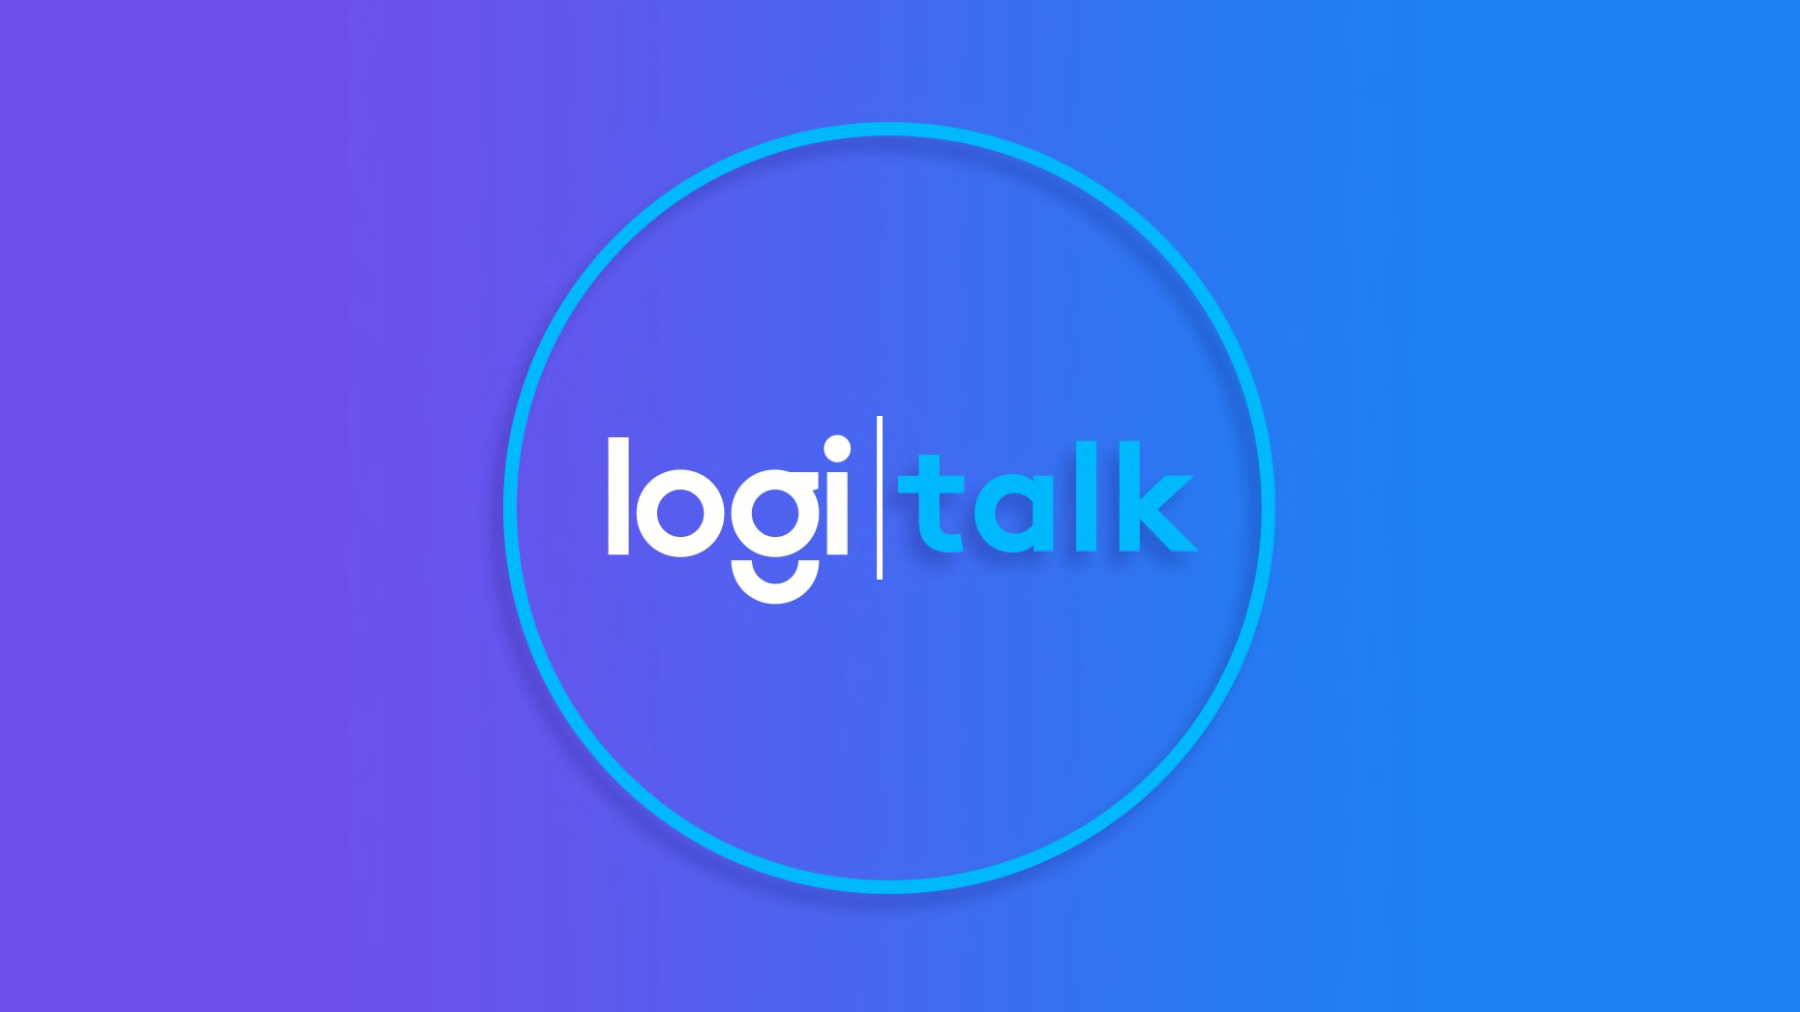 Logi talk logó